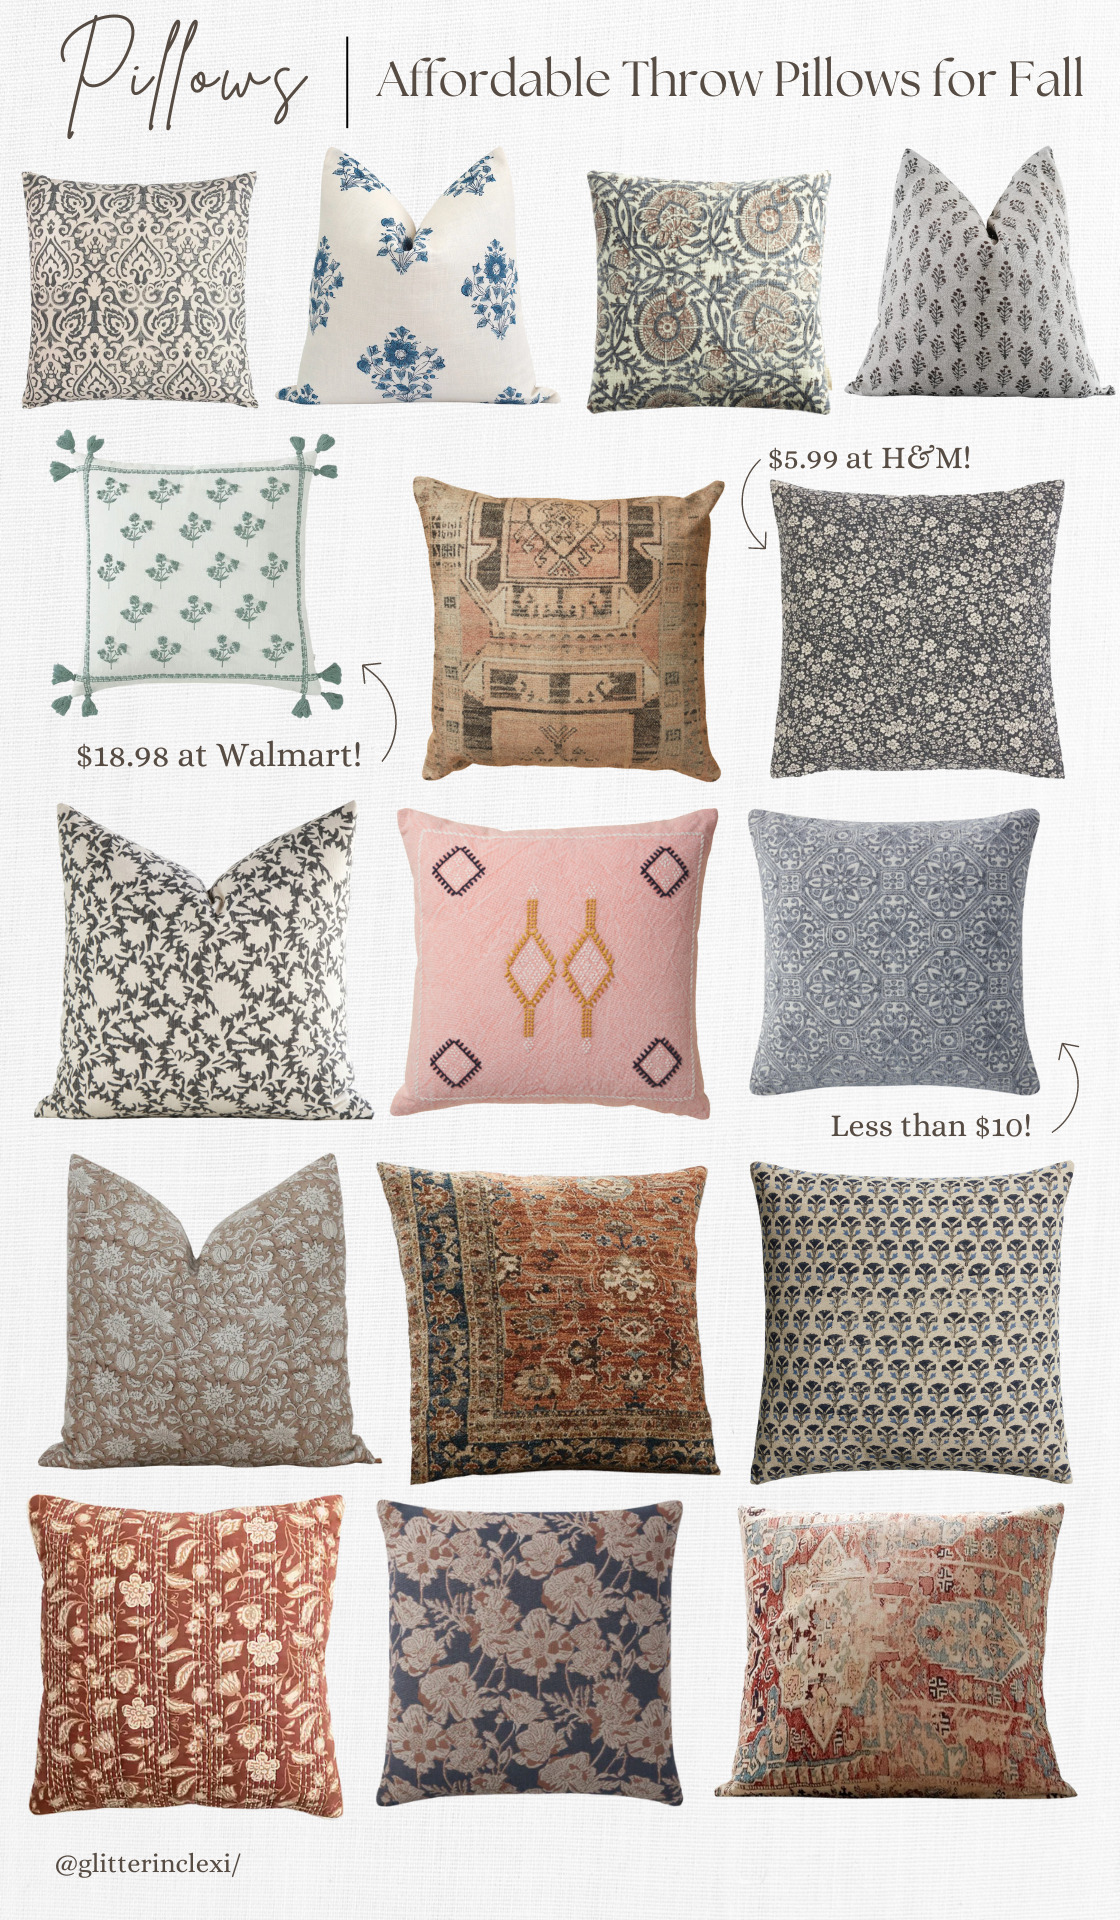 Affordable Throw Pillows for Fall - Home Decor - Throw Pillows for Early Fall Transition - GLITTERINC.COM